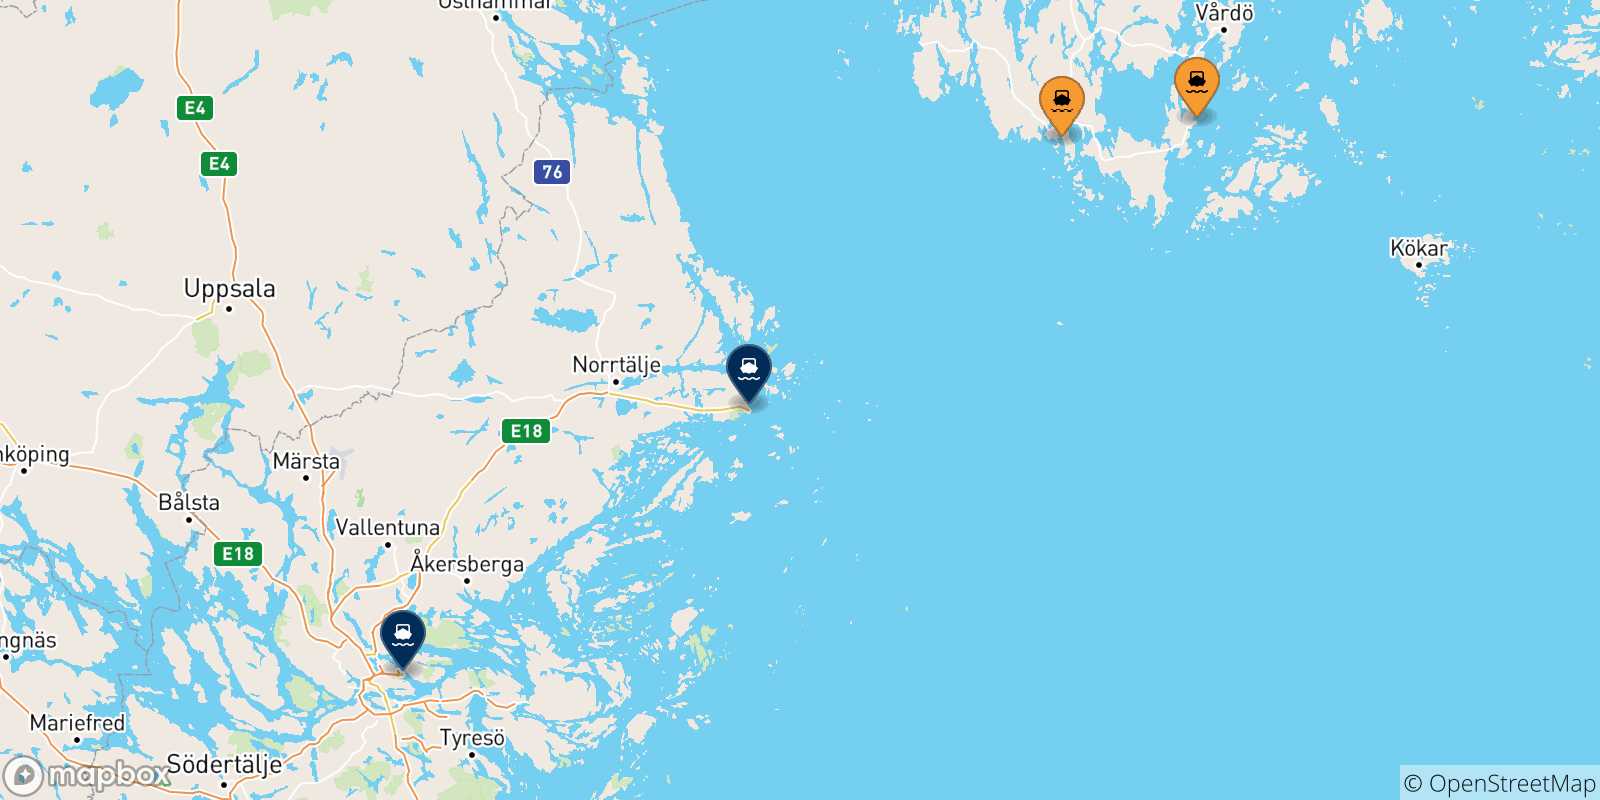 Mappa delle possibili rotte tra le Isole Aland e la Svezia